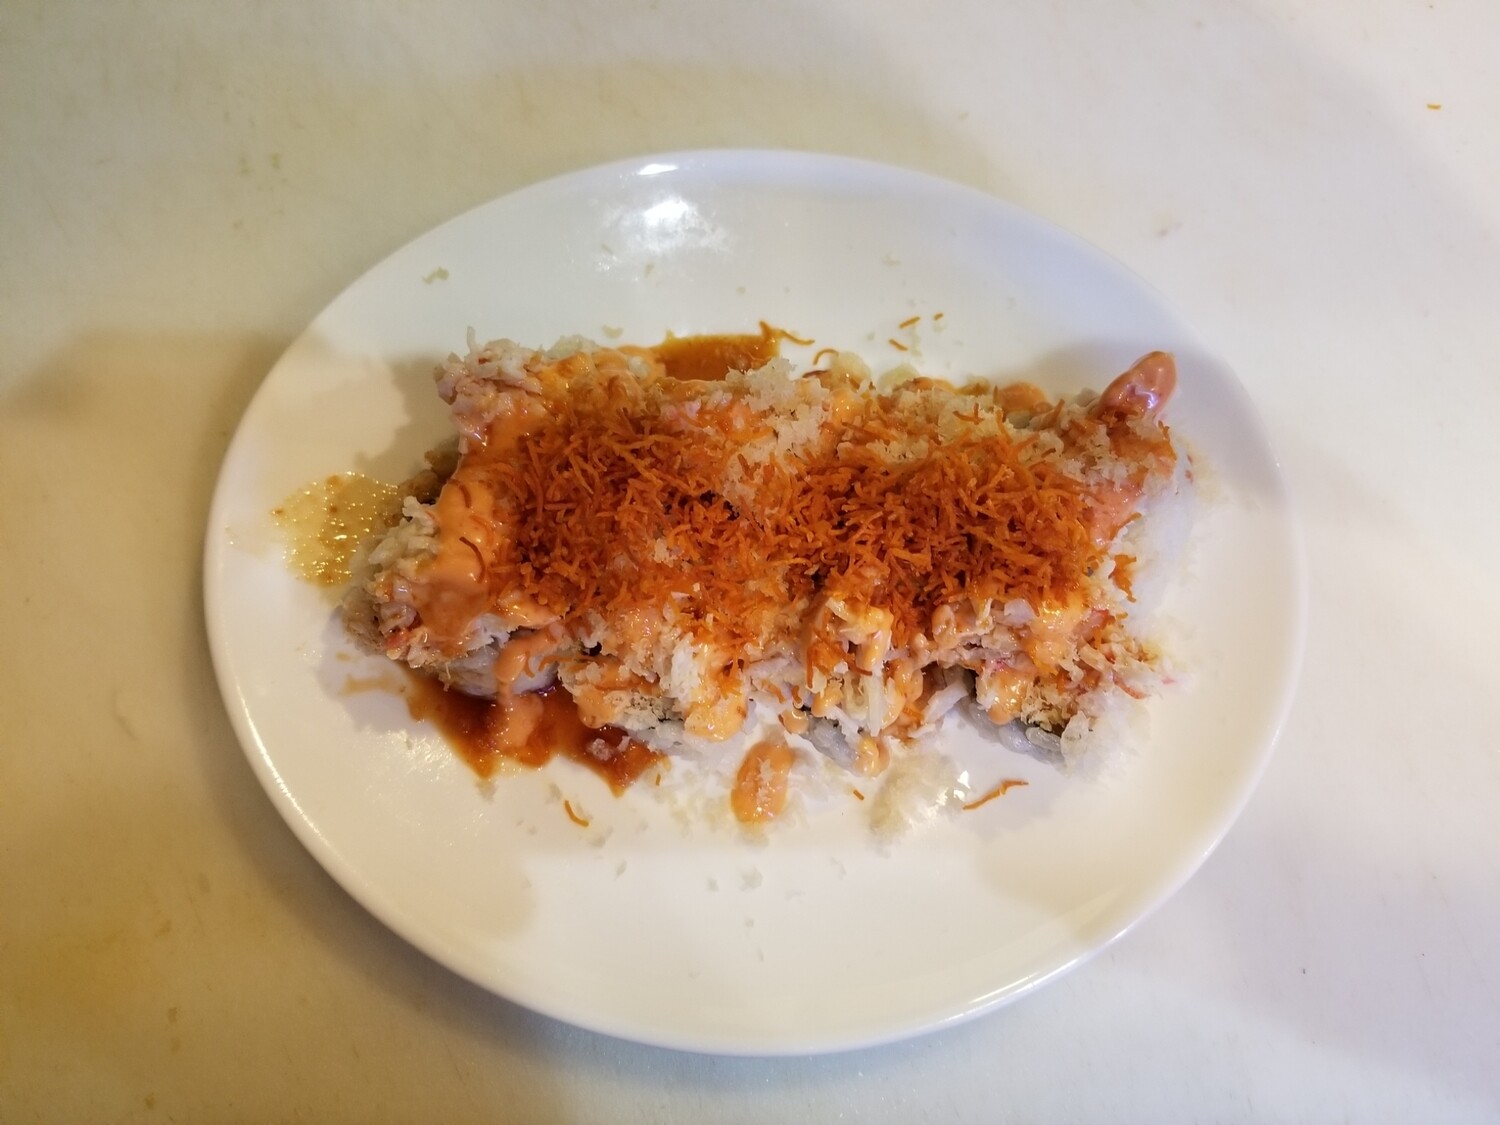 Spicy Tuna Crunch Roll